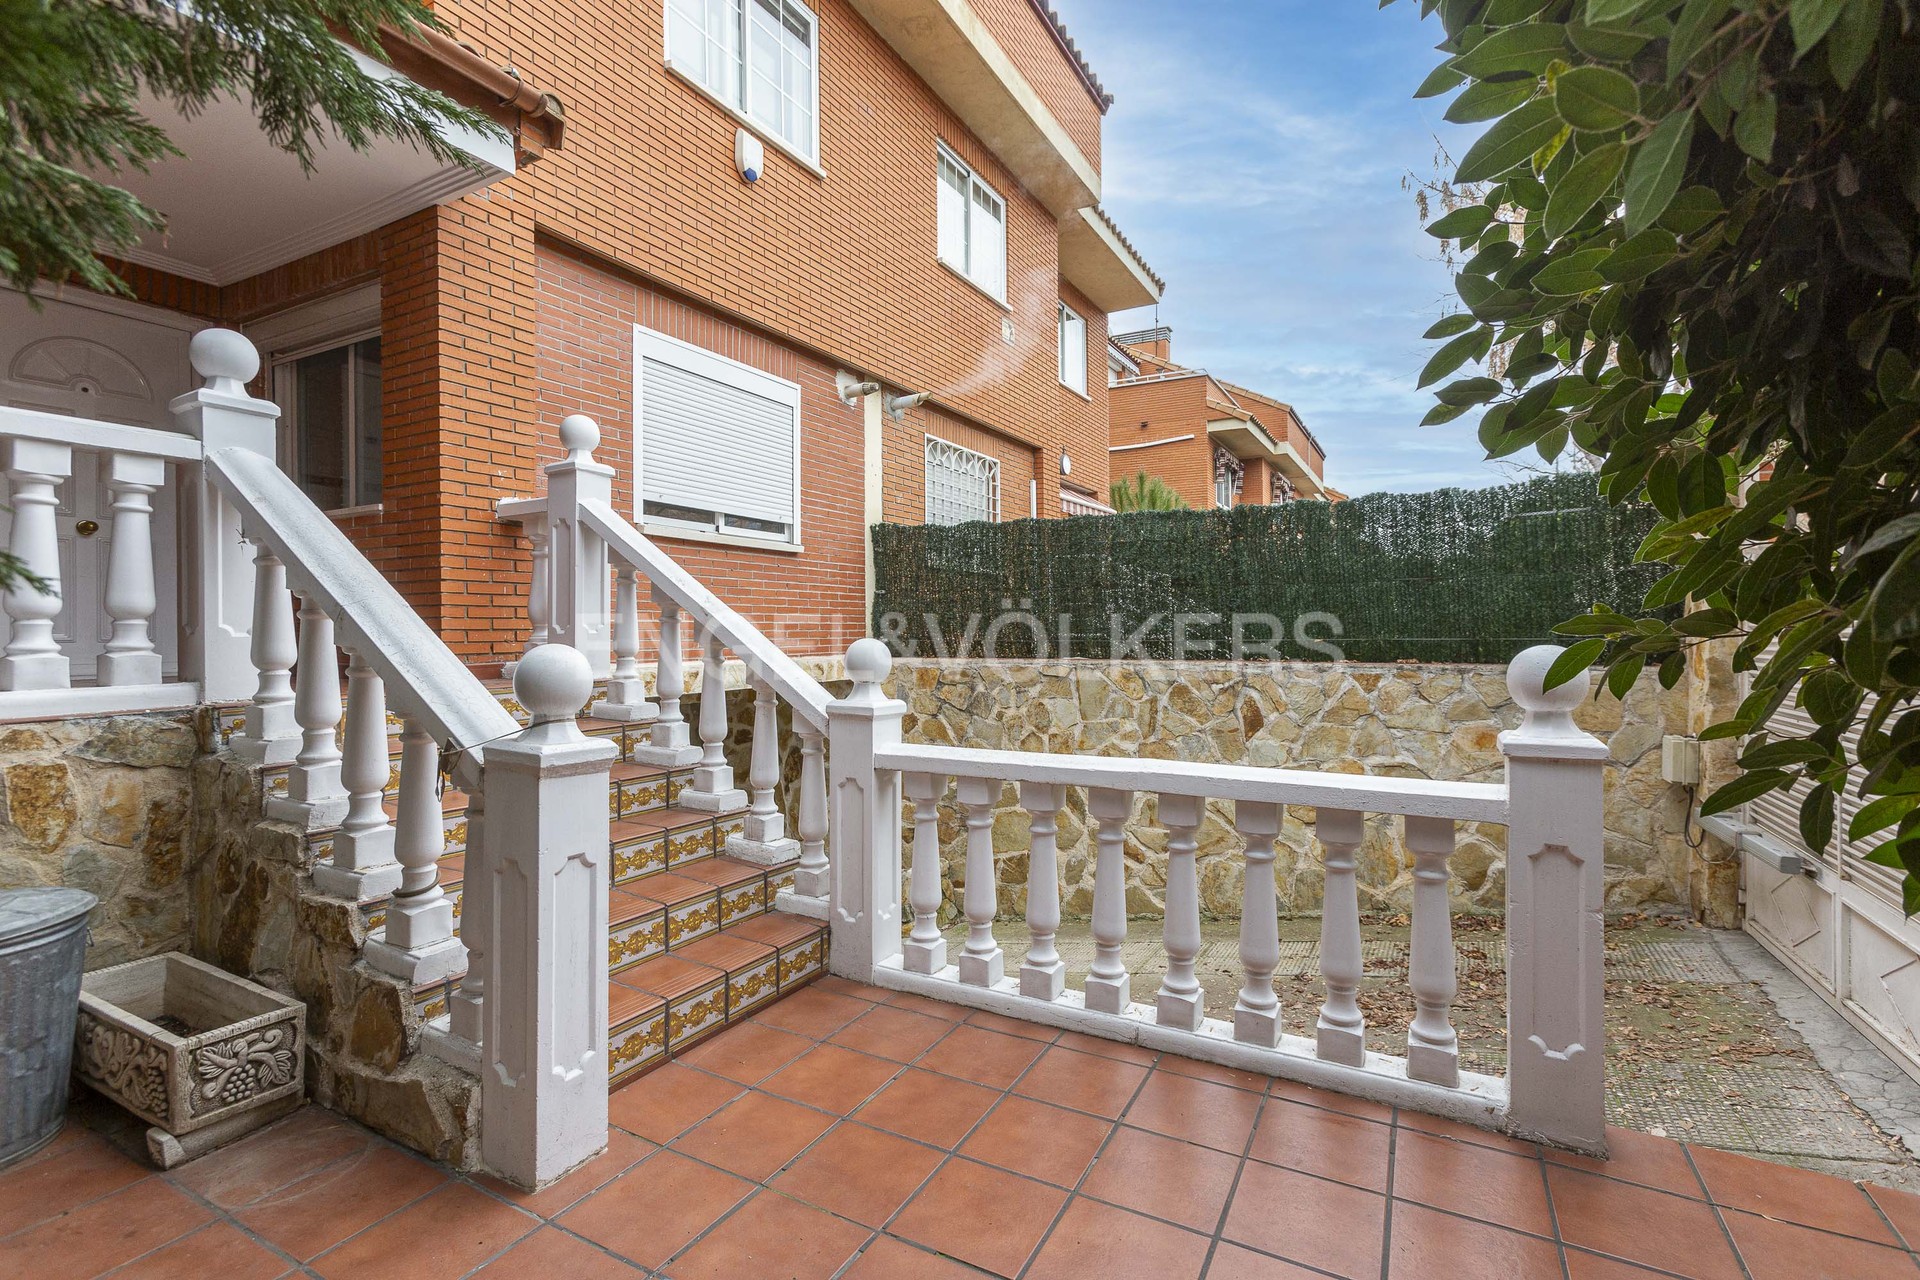 Estupenda casa unifamiliar adosada con piscina en La Garena, Alcalá de Henares